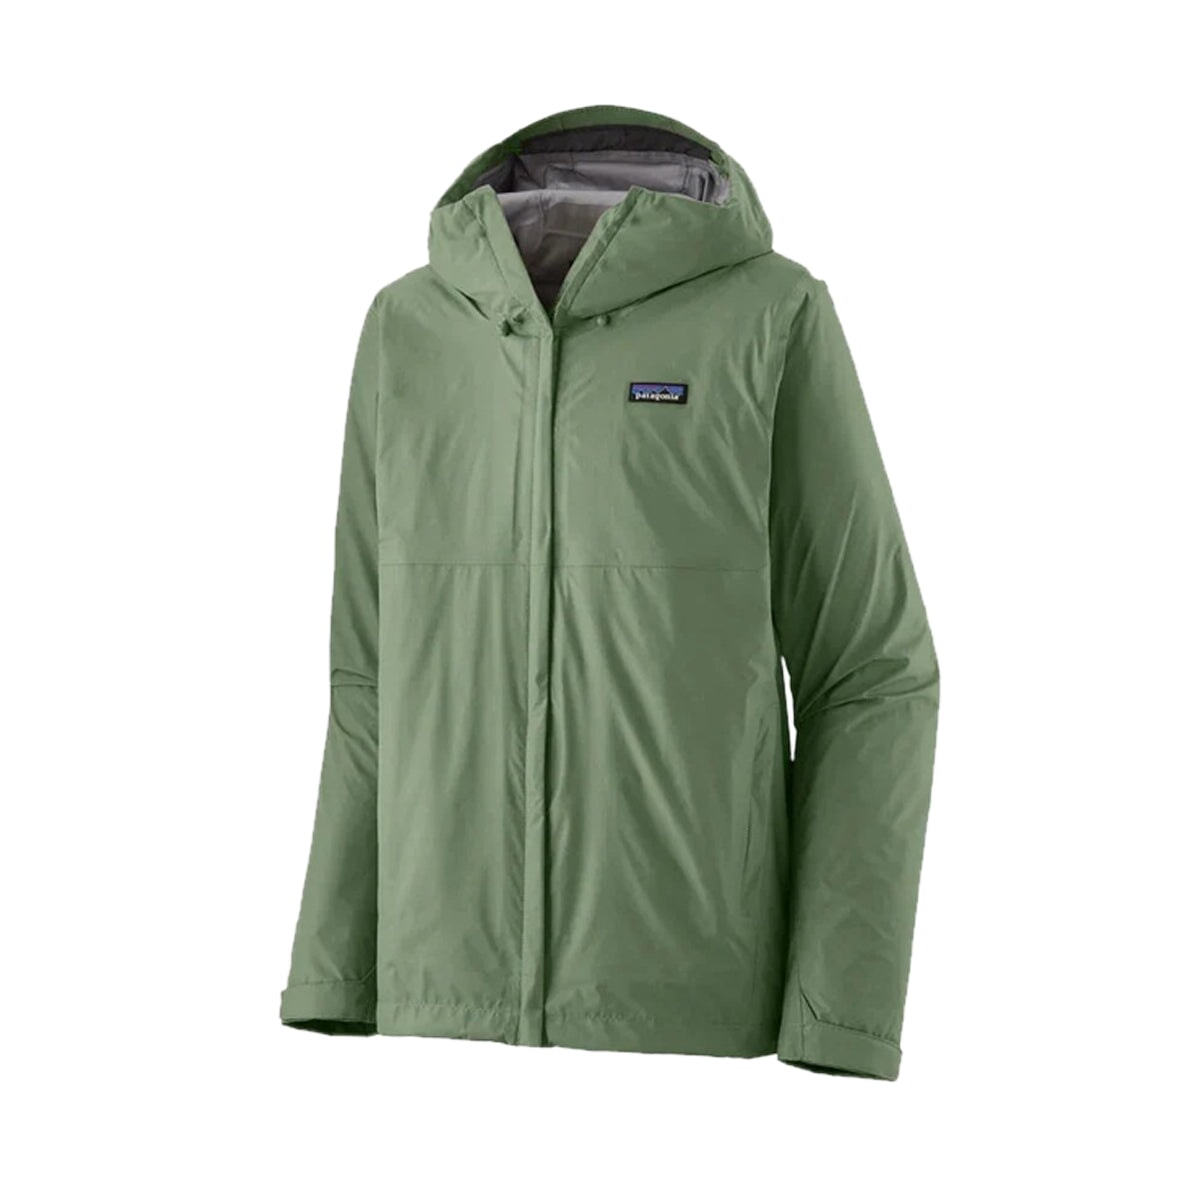 Patagonia Men's Torrentshell 3L Jacket - Sedge Green Jacke Patagonia 